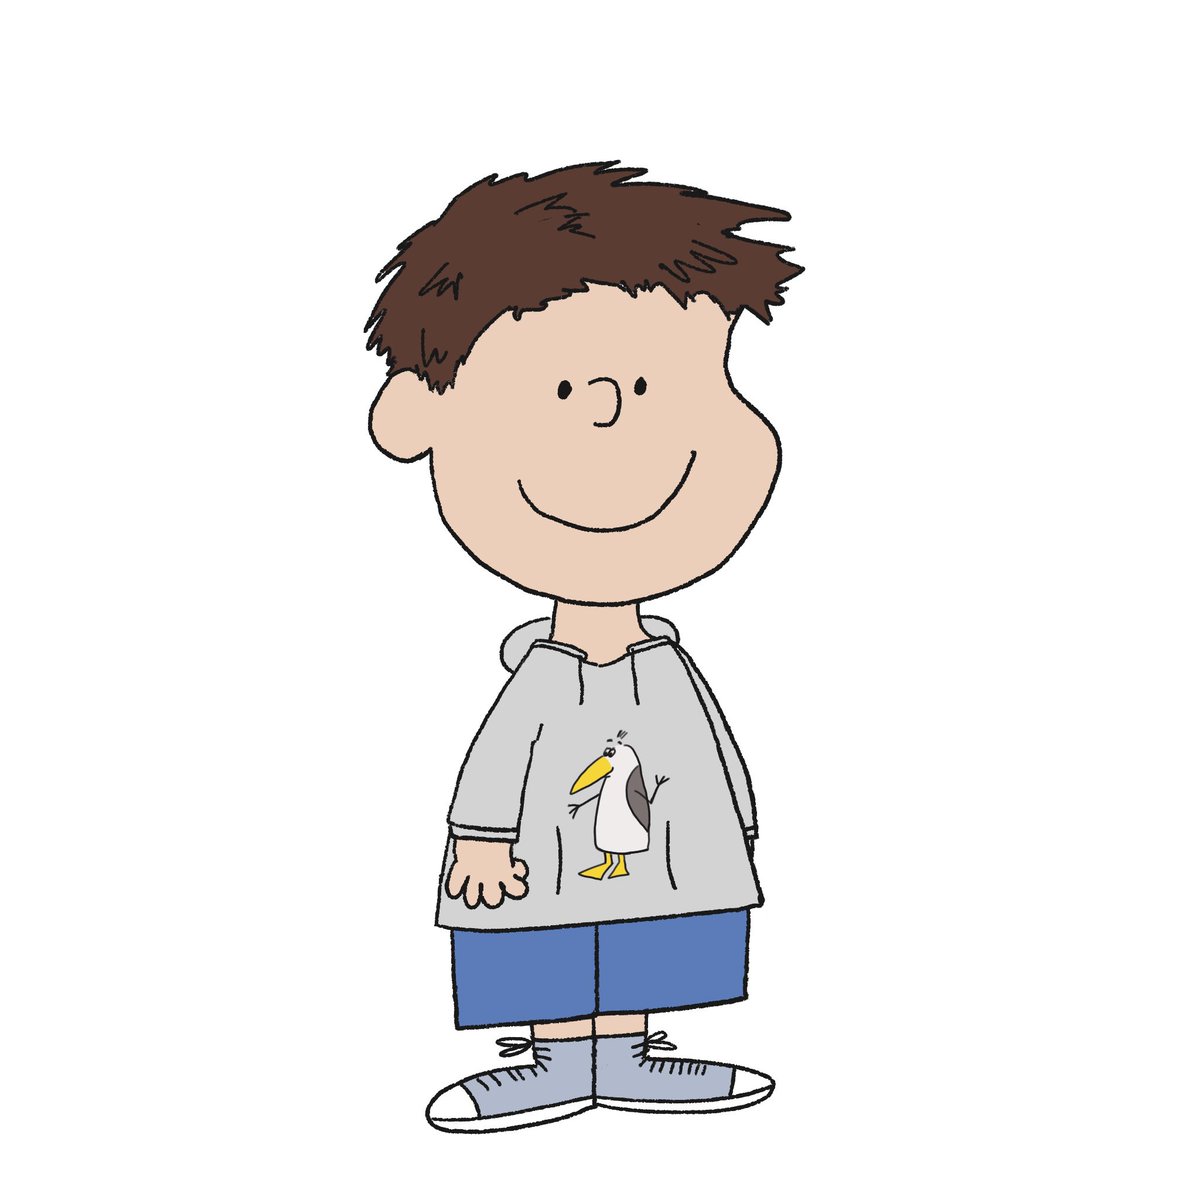 Ich selbst im Stil einer Peanuts Cartoonfigur gezeichnet: kurze braune Haare, graue Chucks, Jeans, grauer Hoodie mit Steinmöwe (meine eigenen Cartoonmöwen) auf der Vorderseite.